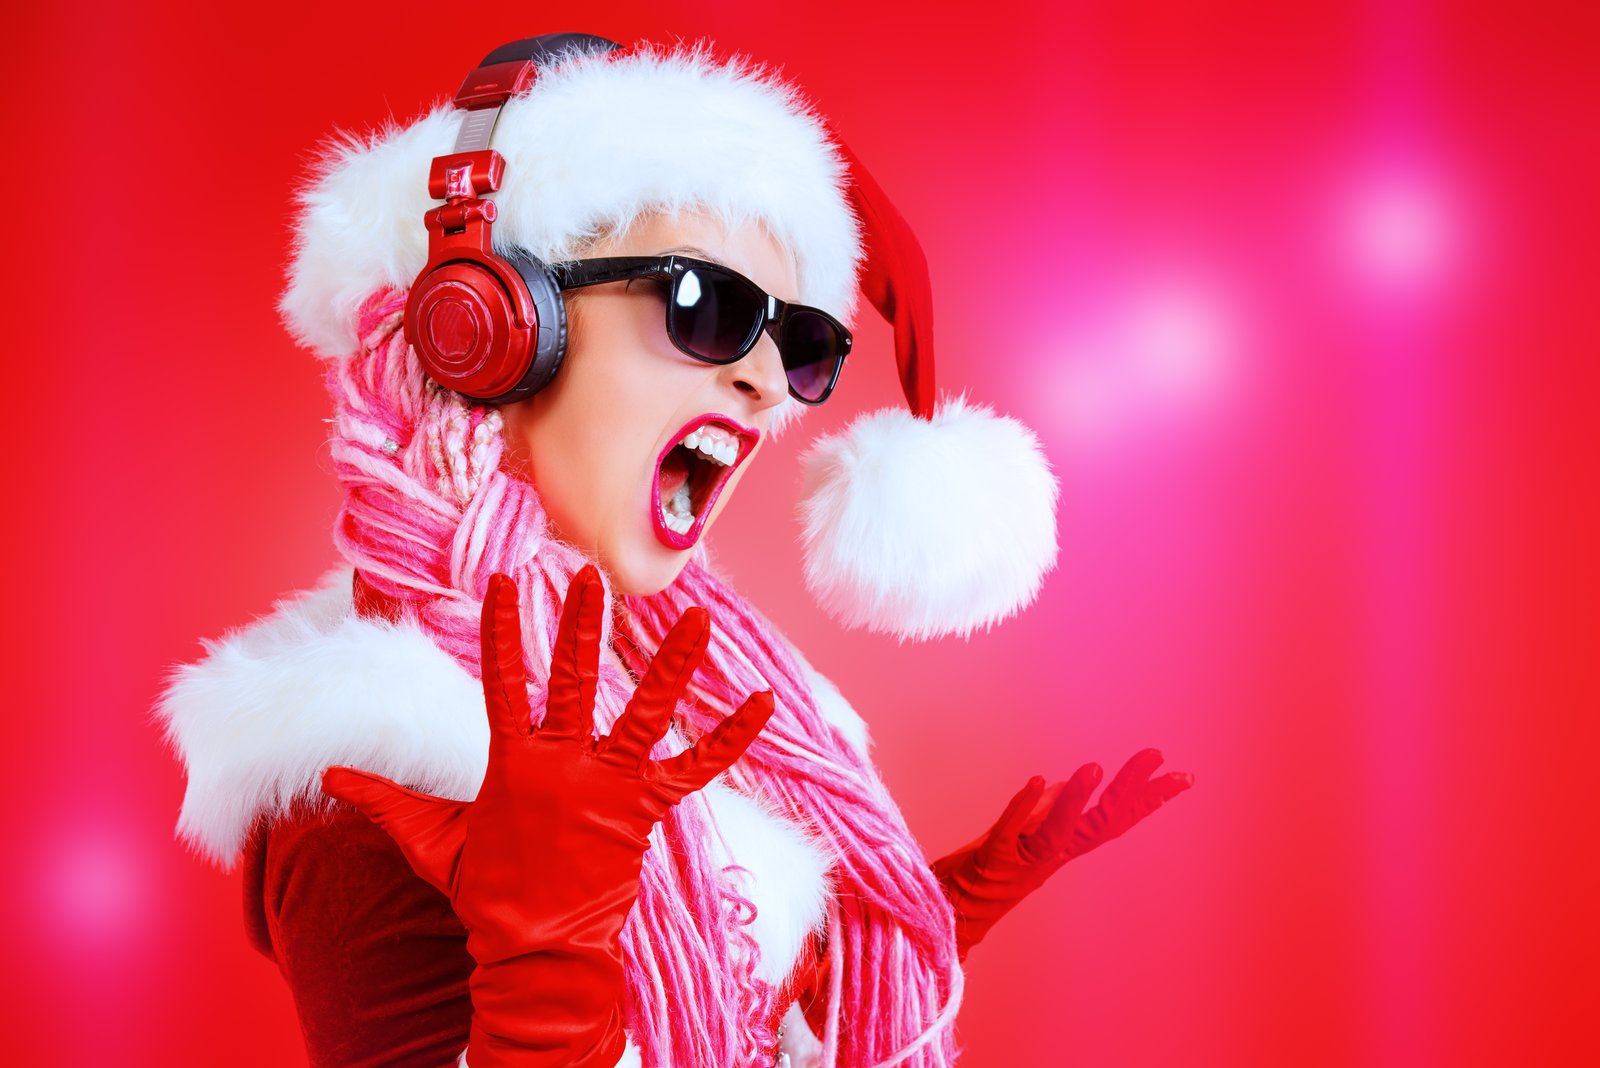 Słuchanie świątecznych piosenek (na okrągło) może być szkodliwe dla zdrowia?